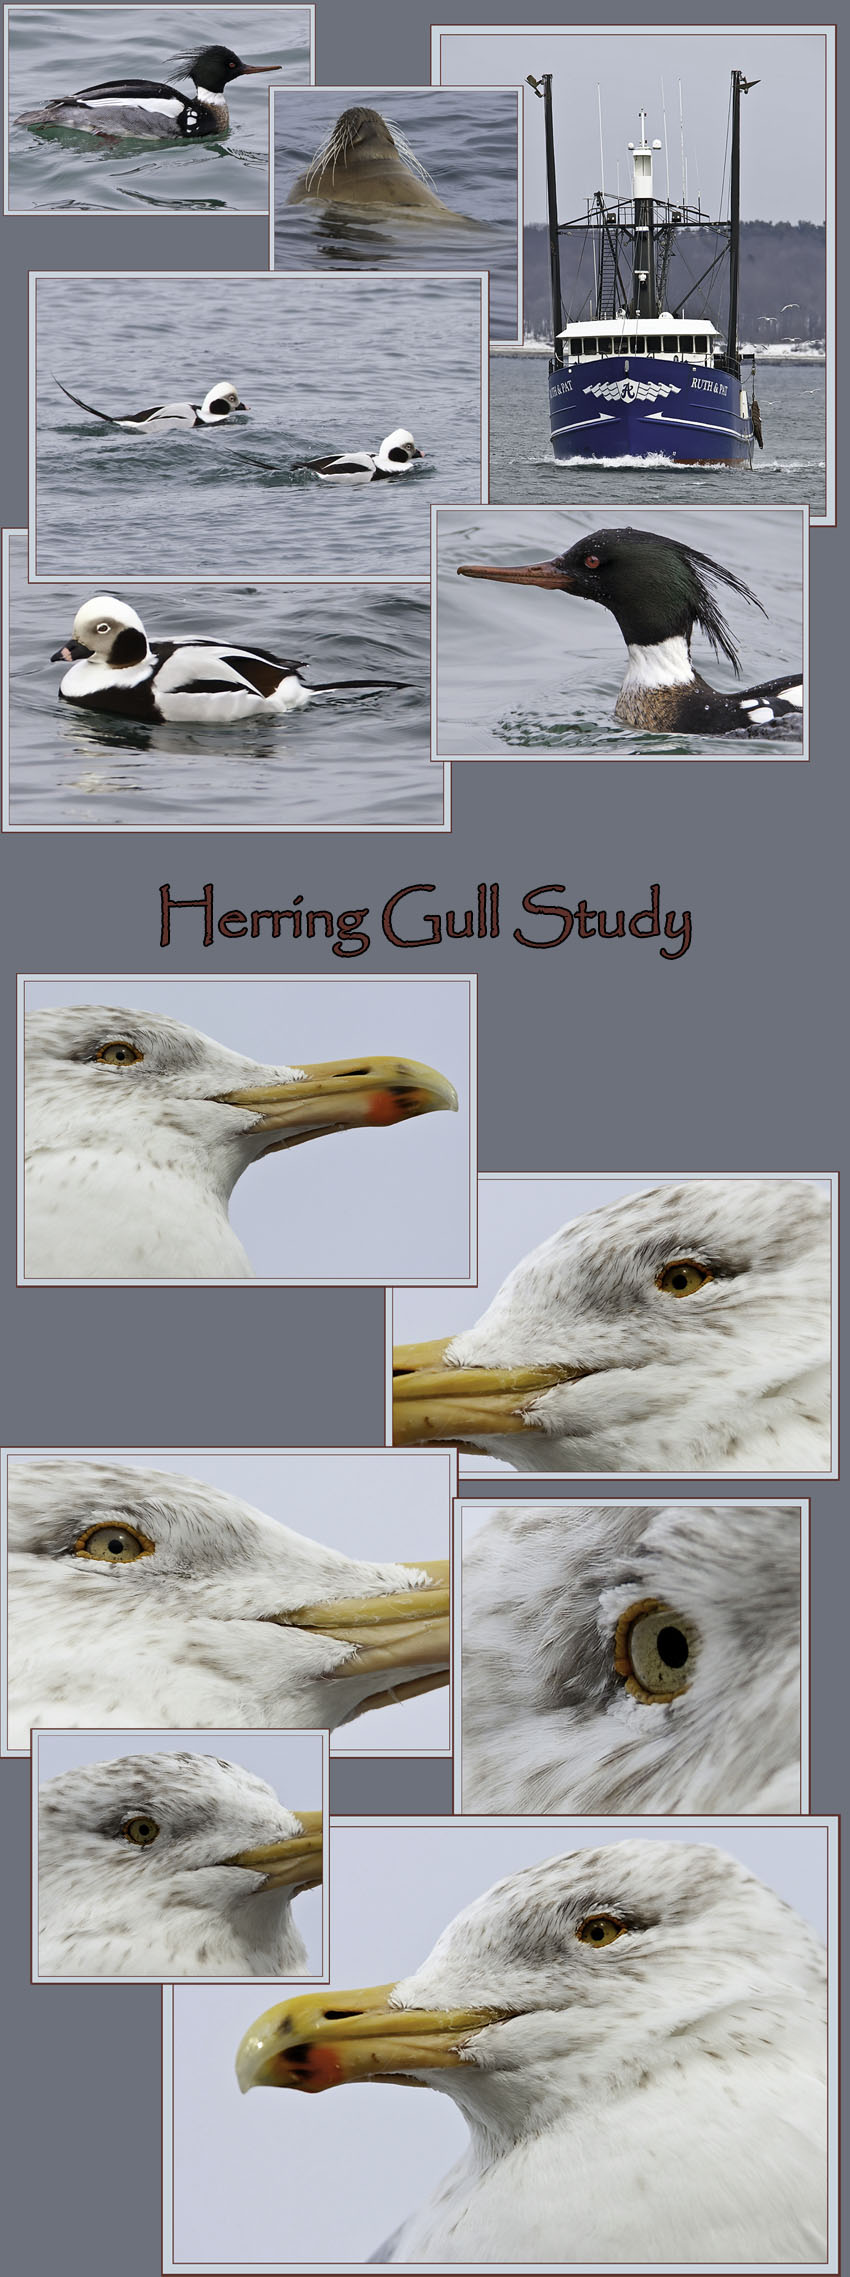 Around Portland Harbor & the Herring Gull